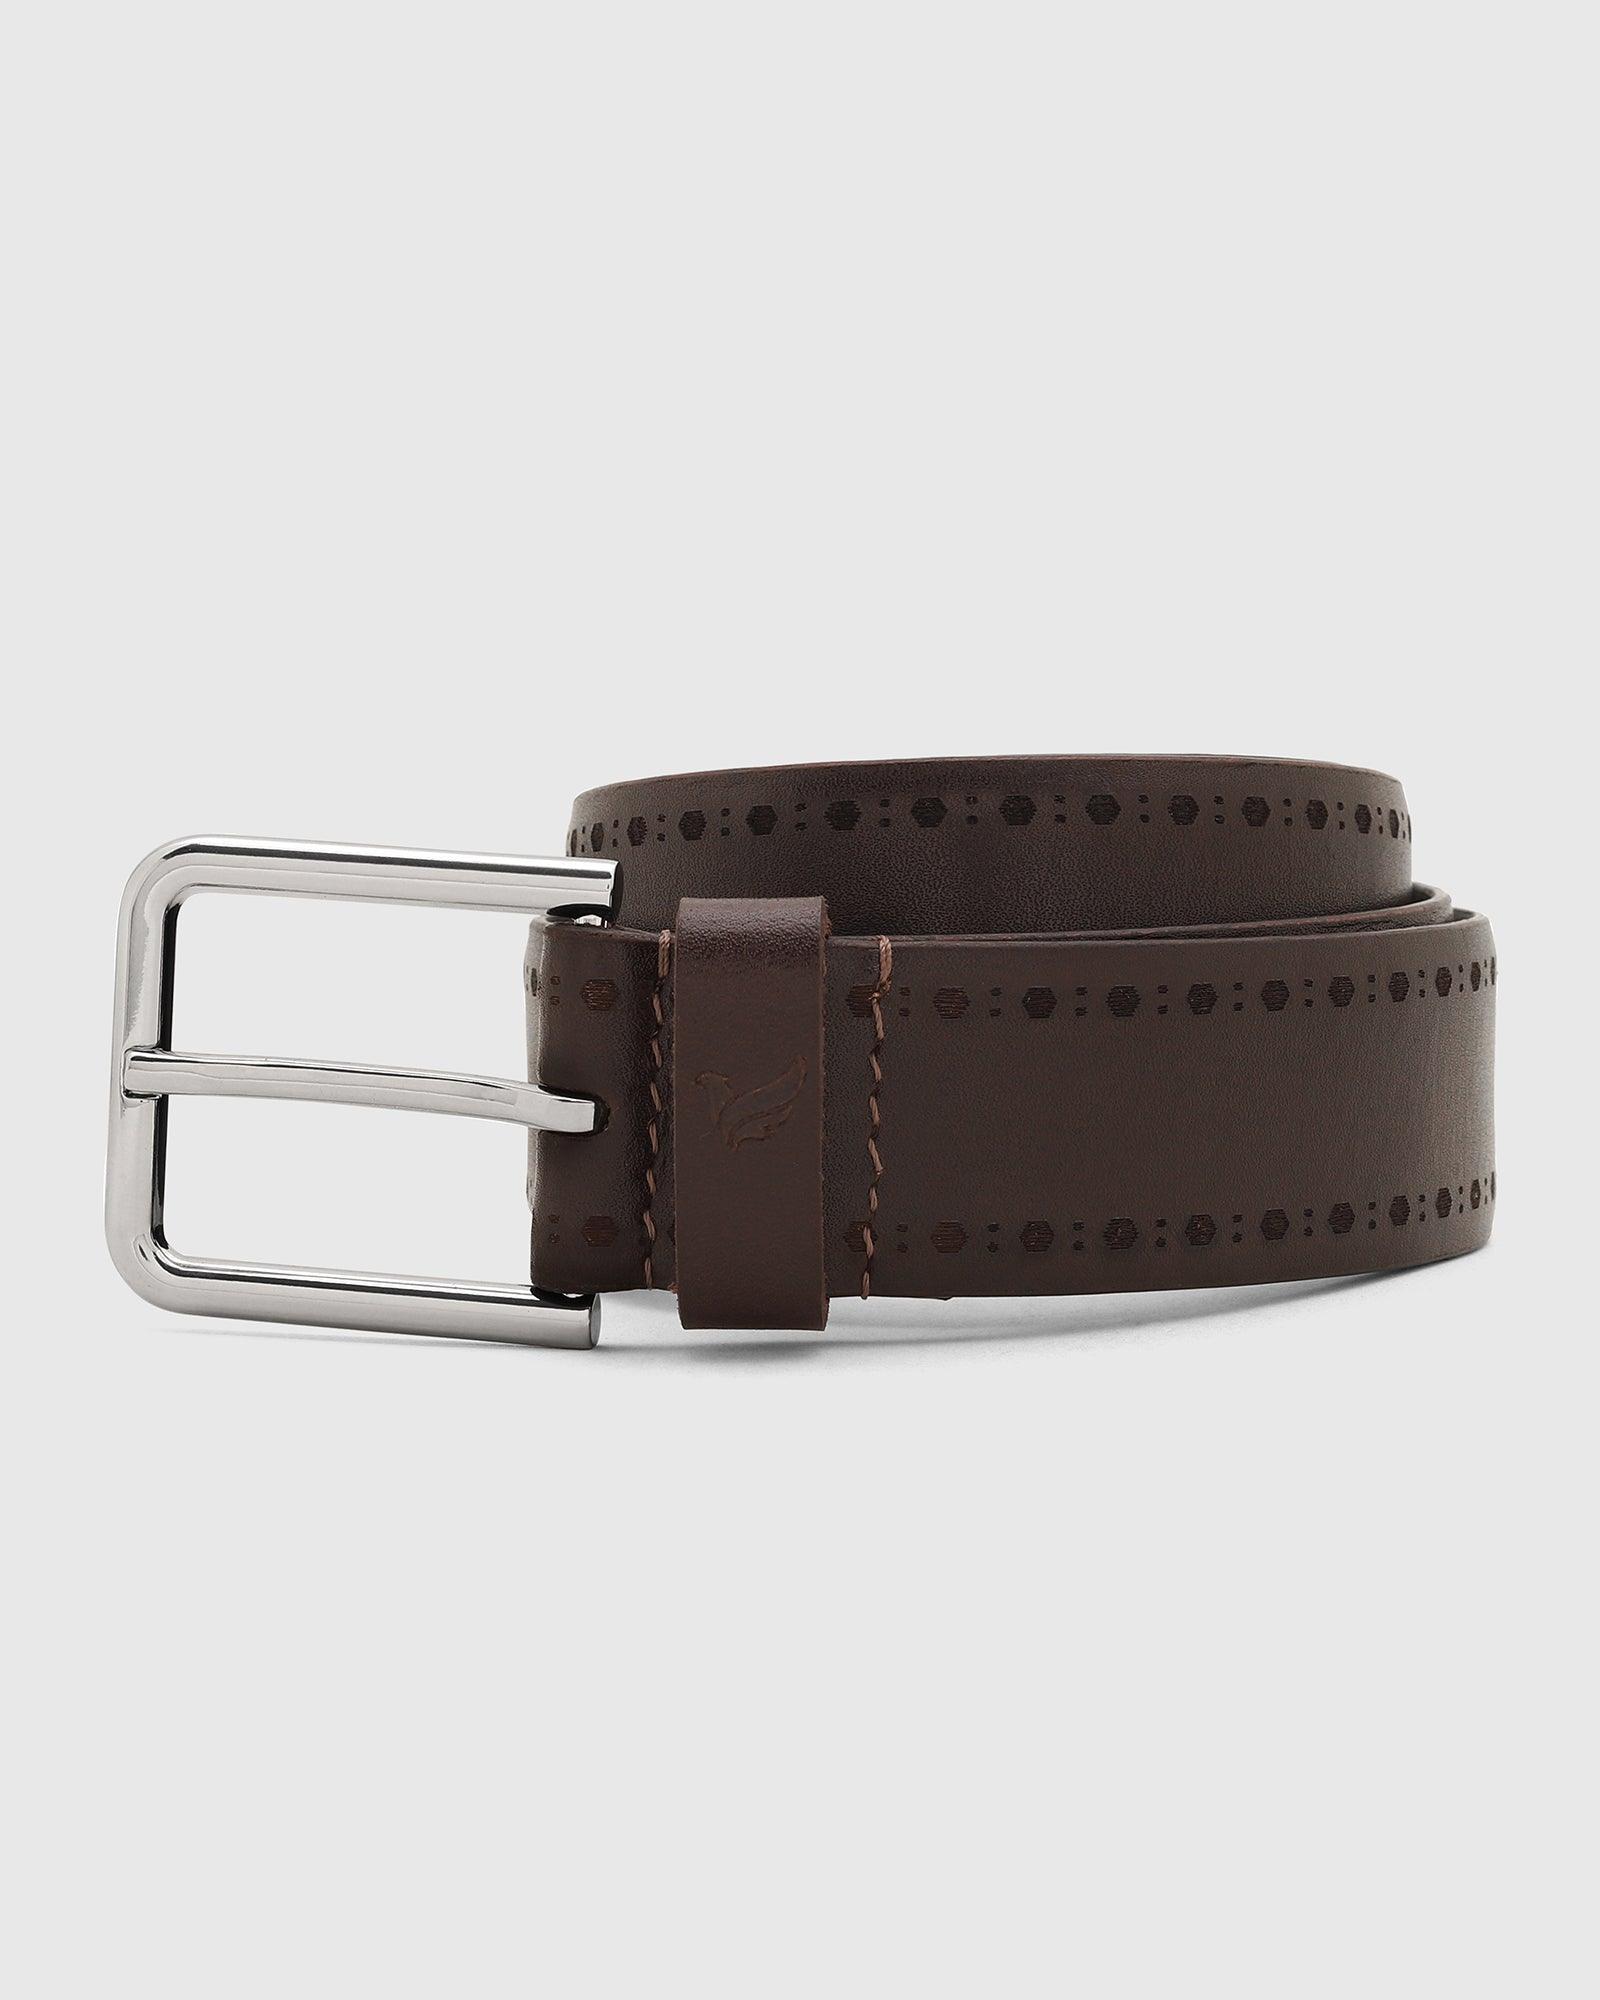 leather burgandy solid belt - steven